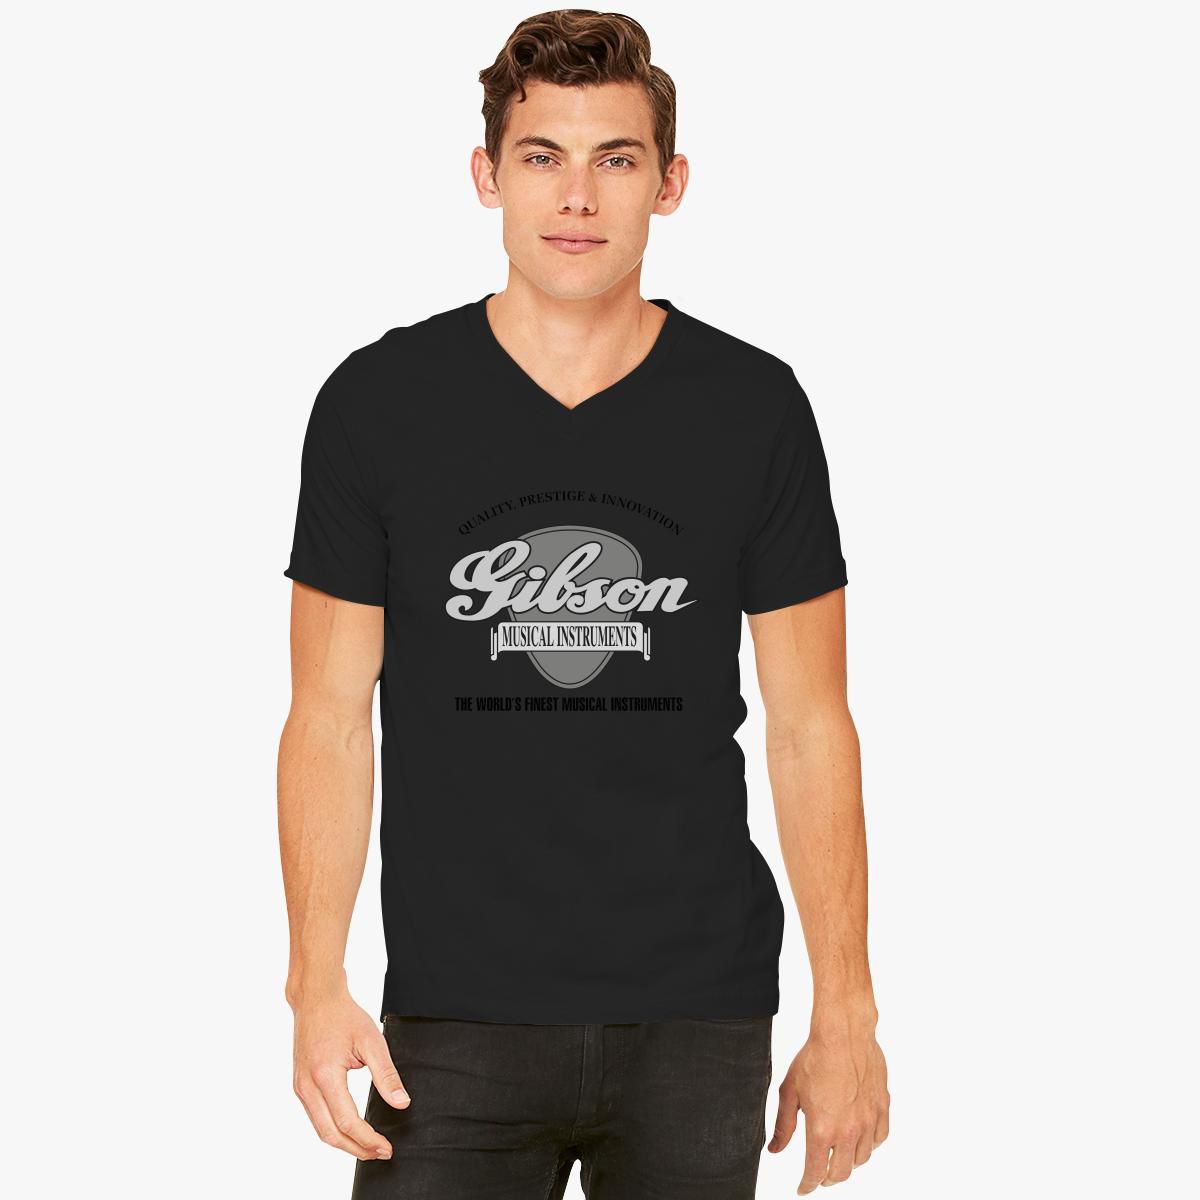 Gibson V-Neck T-shirt - Customon